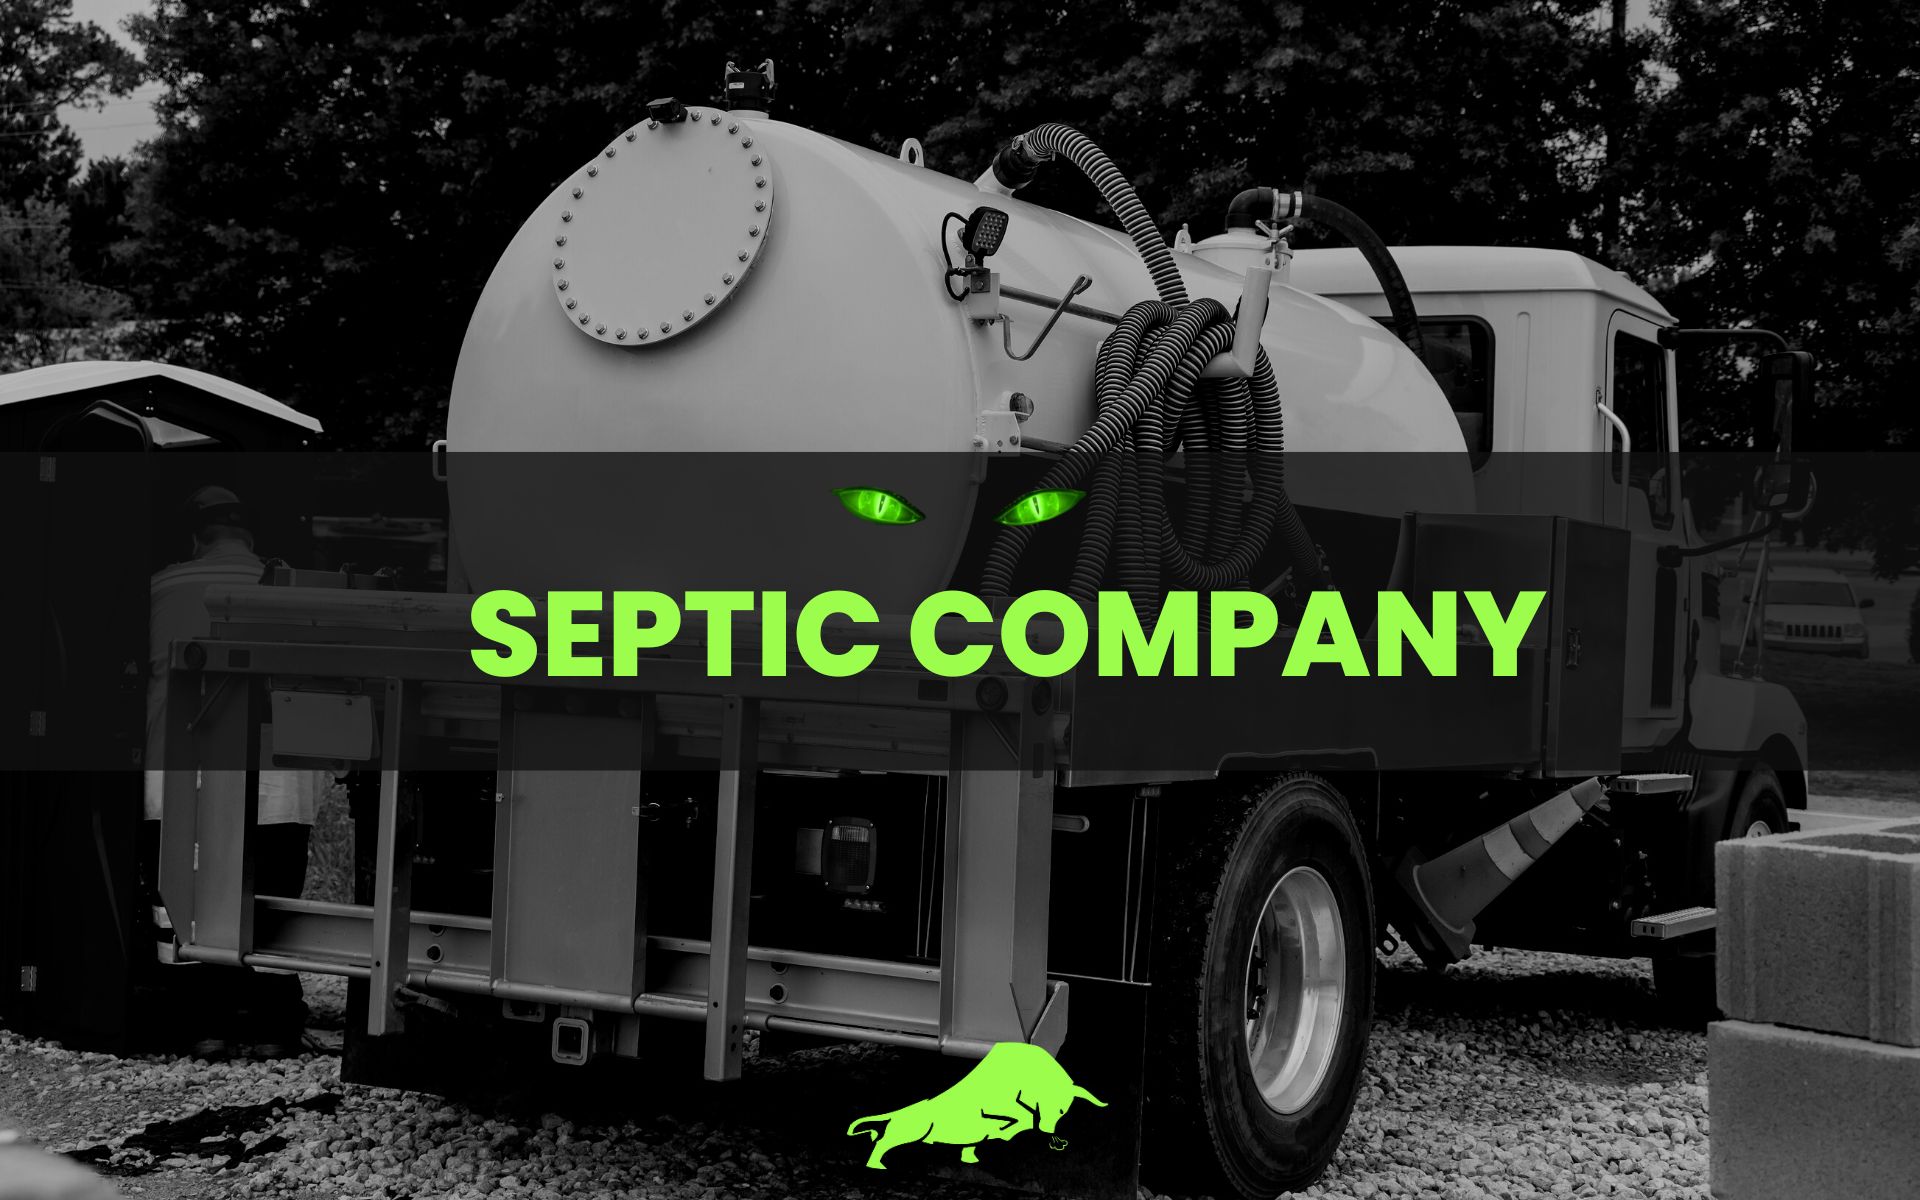 Septic Company - Relentless Digital LLC